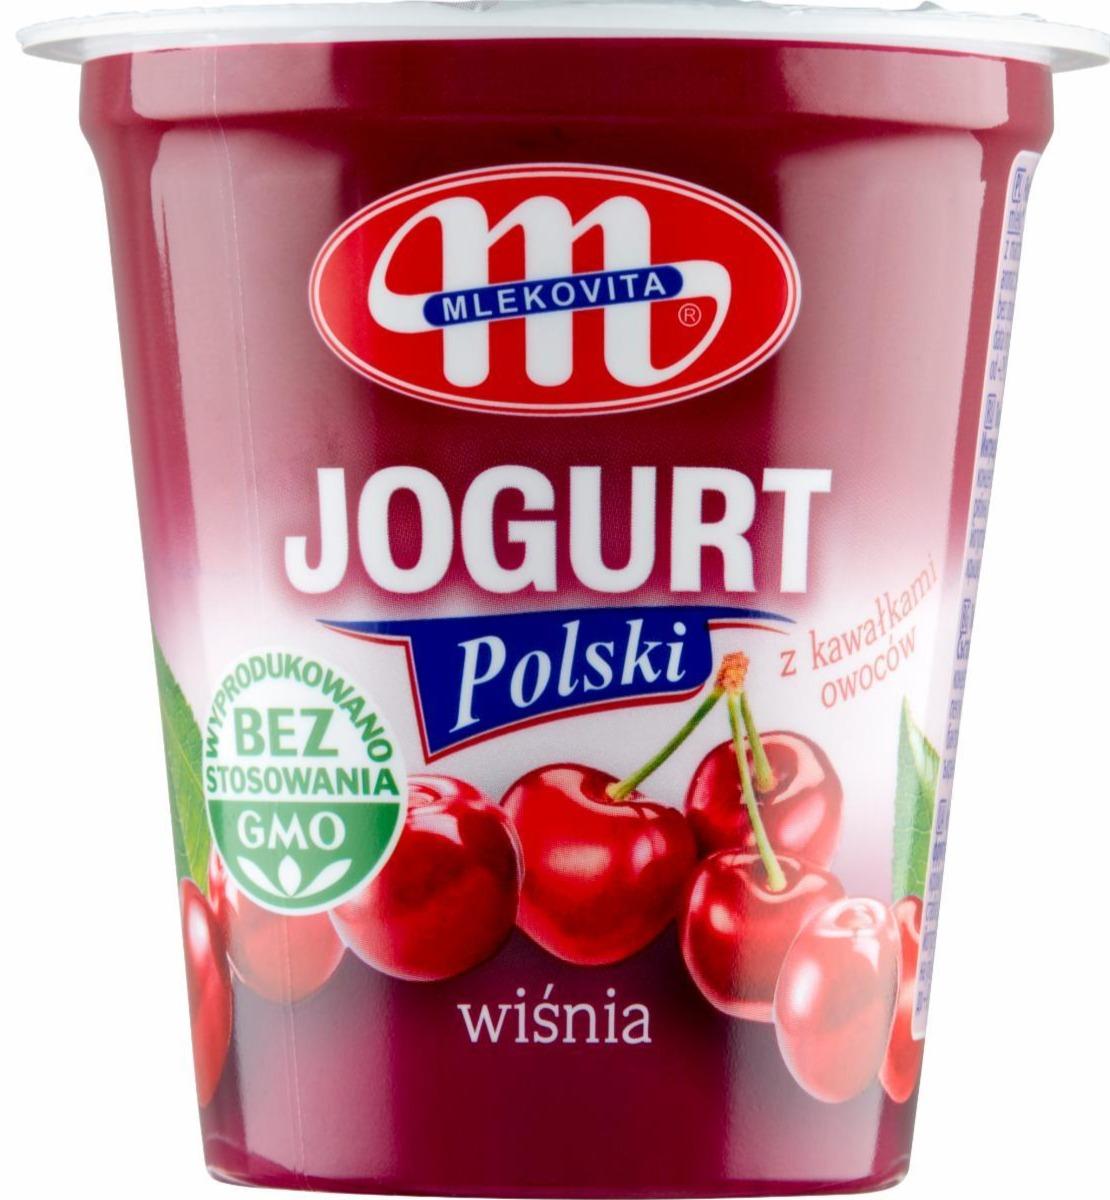 Zdjęcia - Jogurt Polski wiśnia Mlekovita